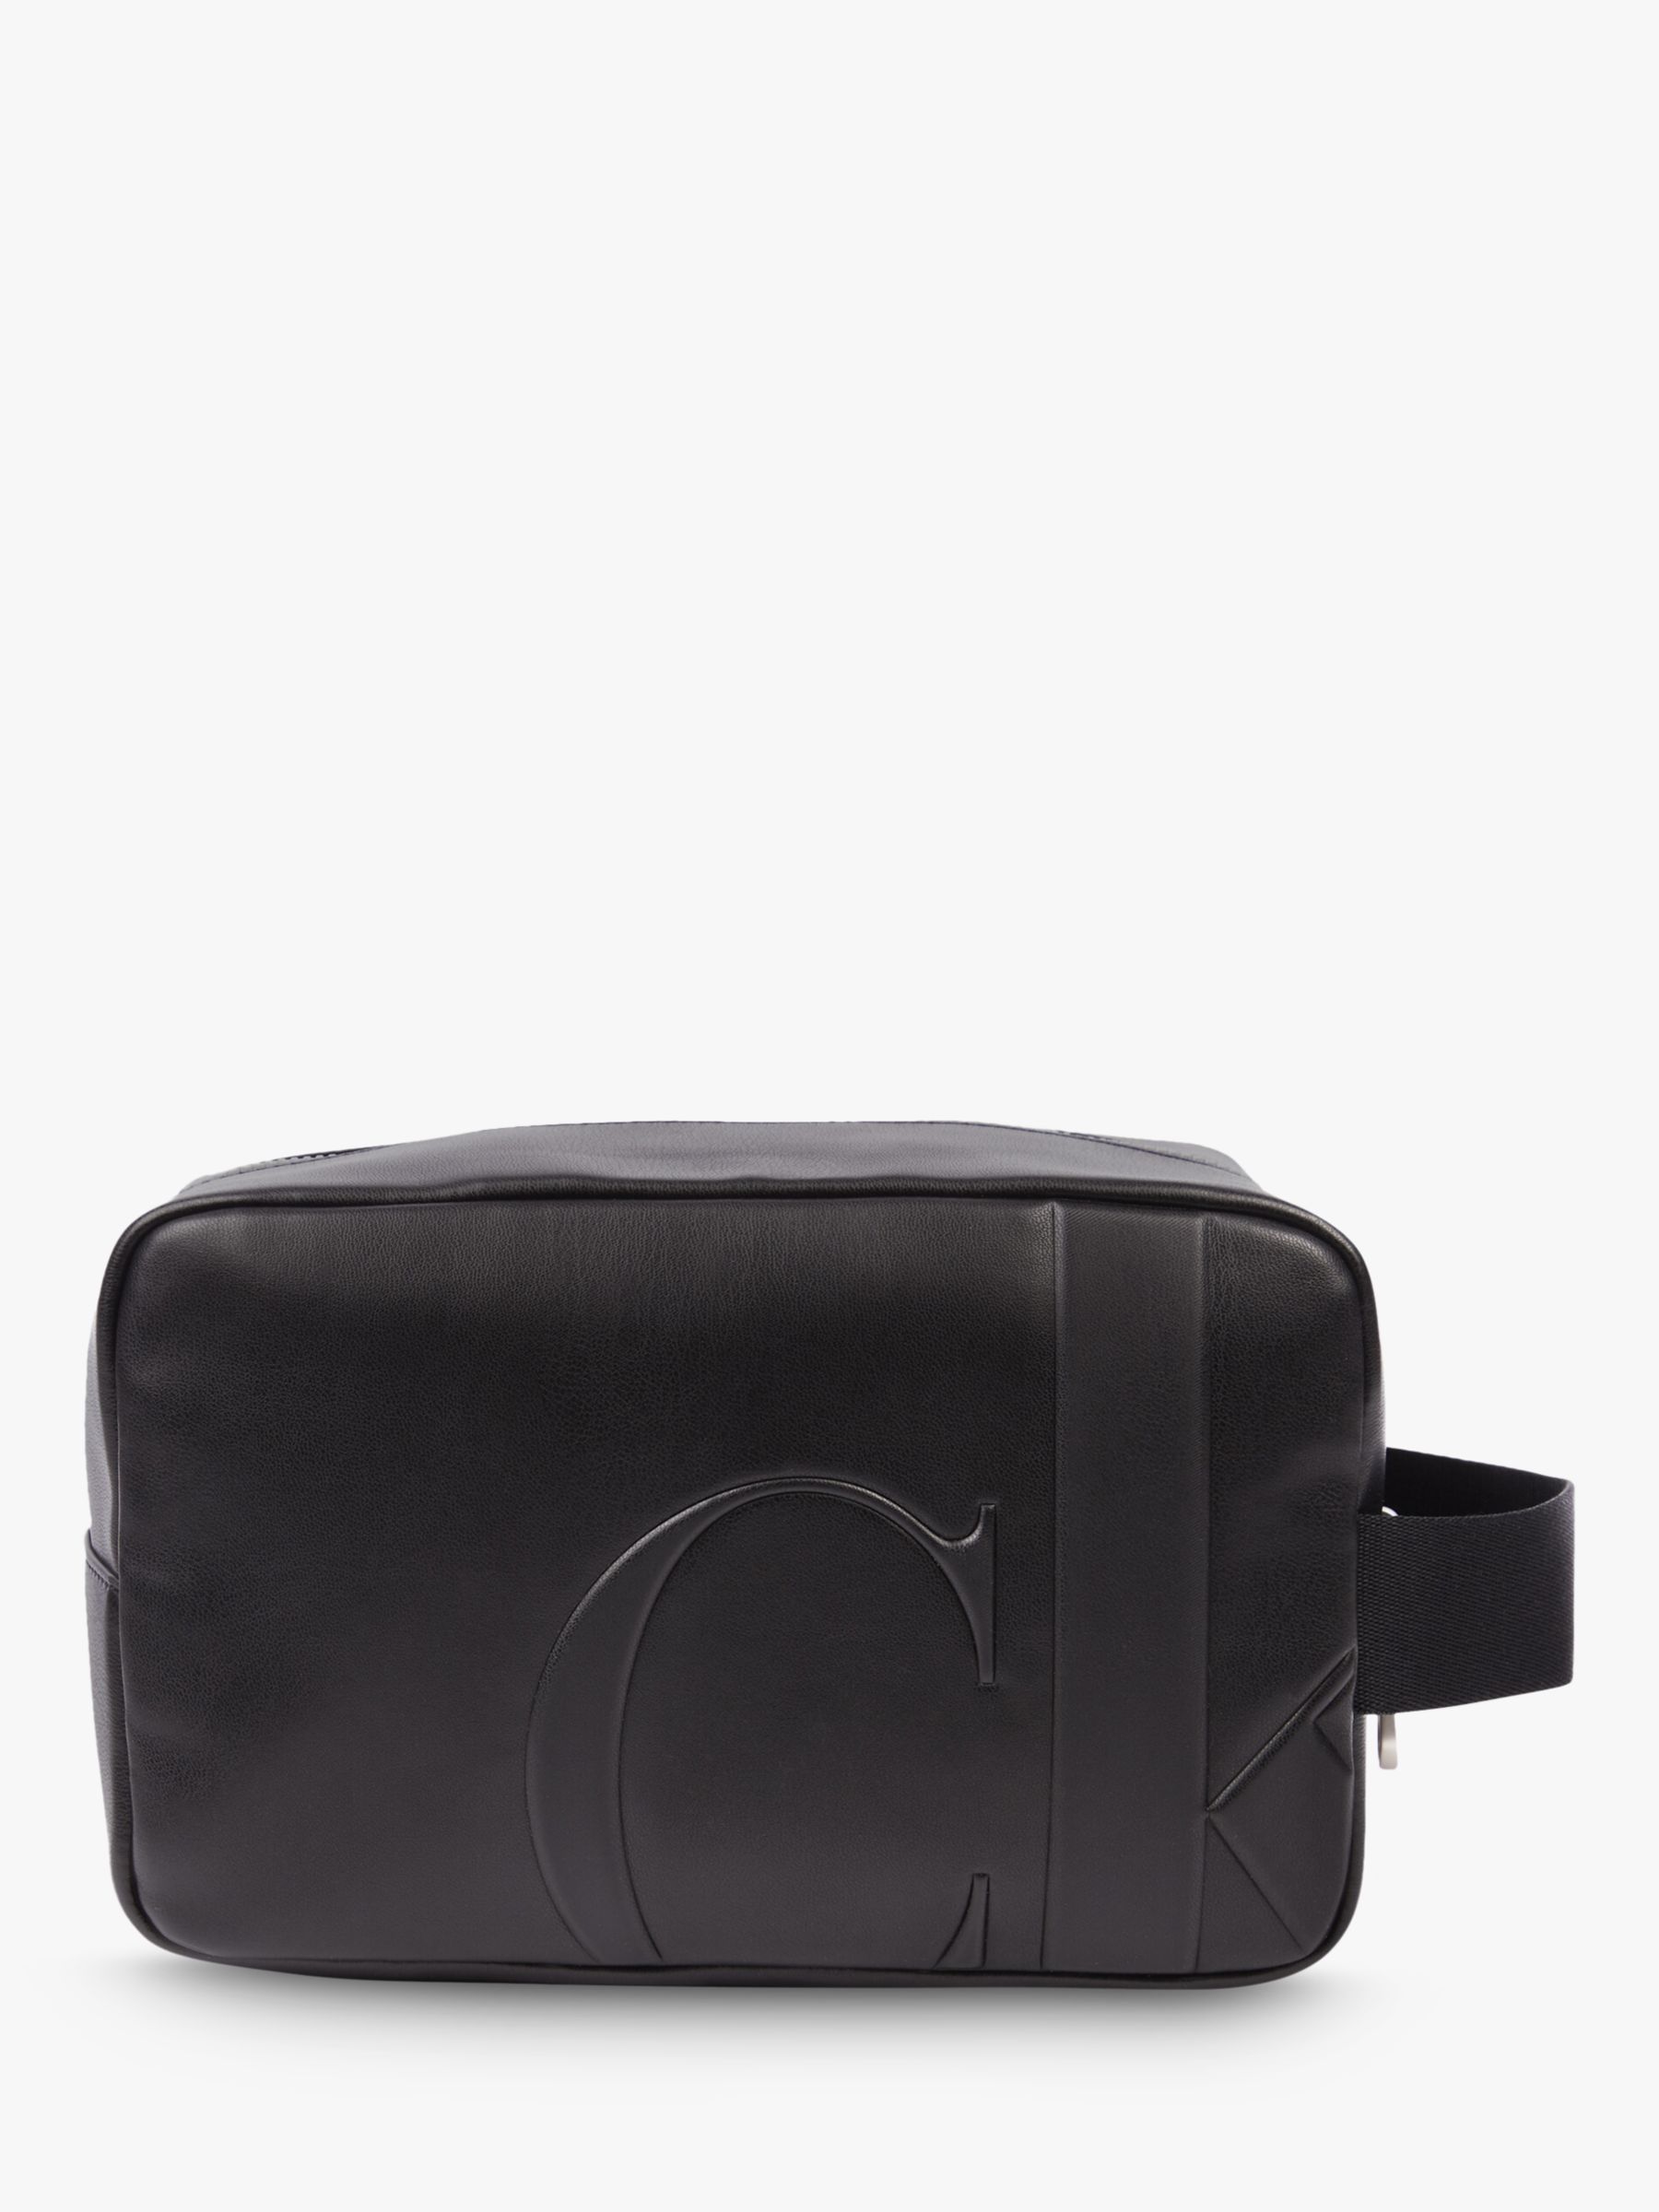 Calvin Klein Leather Wash Bag, Black at John Lewis & Partners